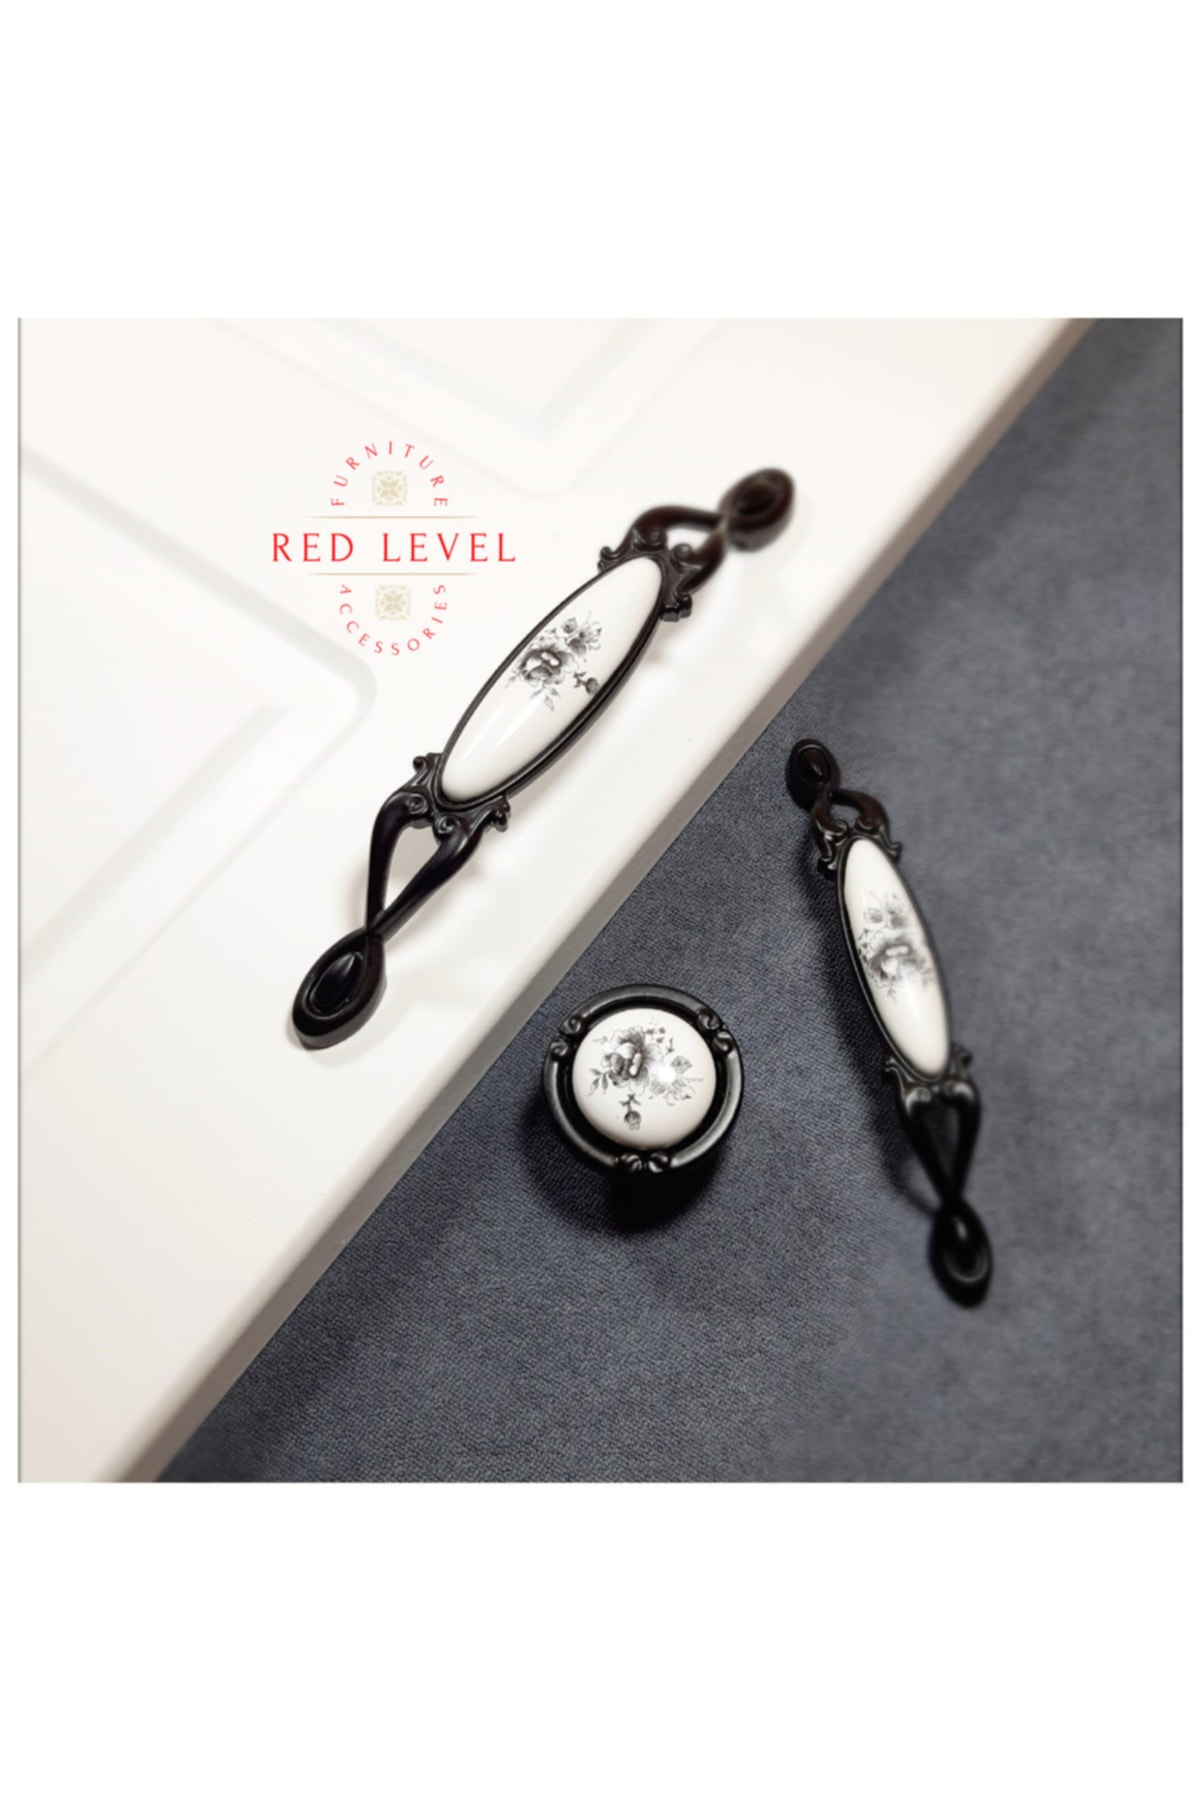 Red Level Zümrüt 96 Mm Siyah Porselen Kulp Modelleri Dolap Çekmece Mobilya Mutfak Kulbu 246